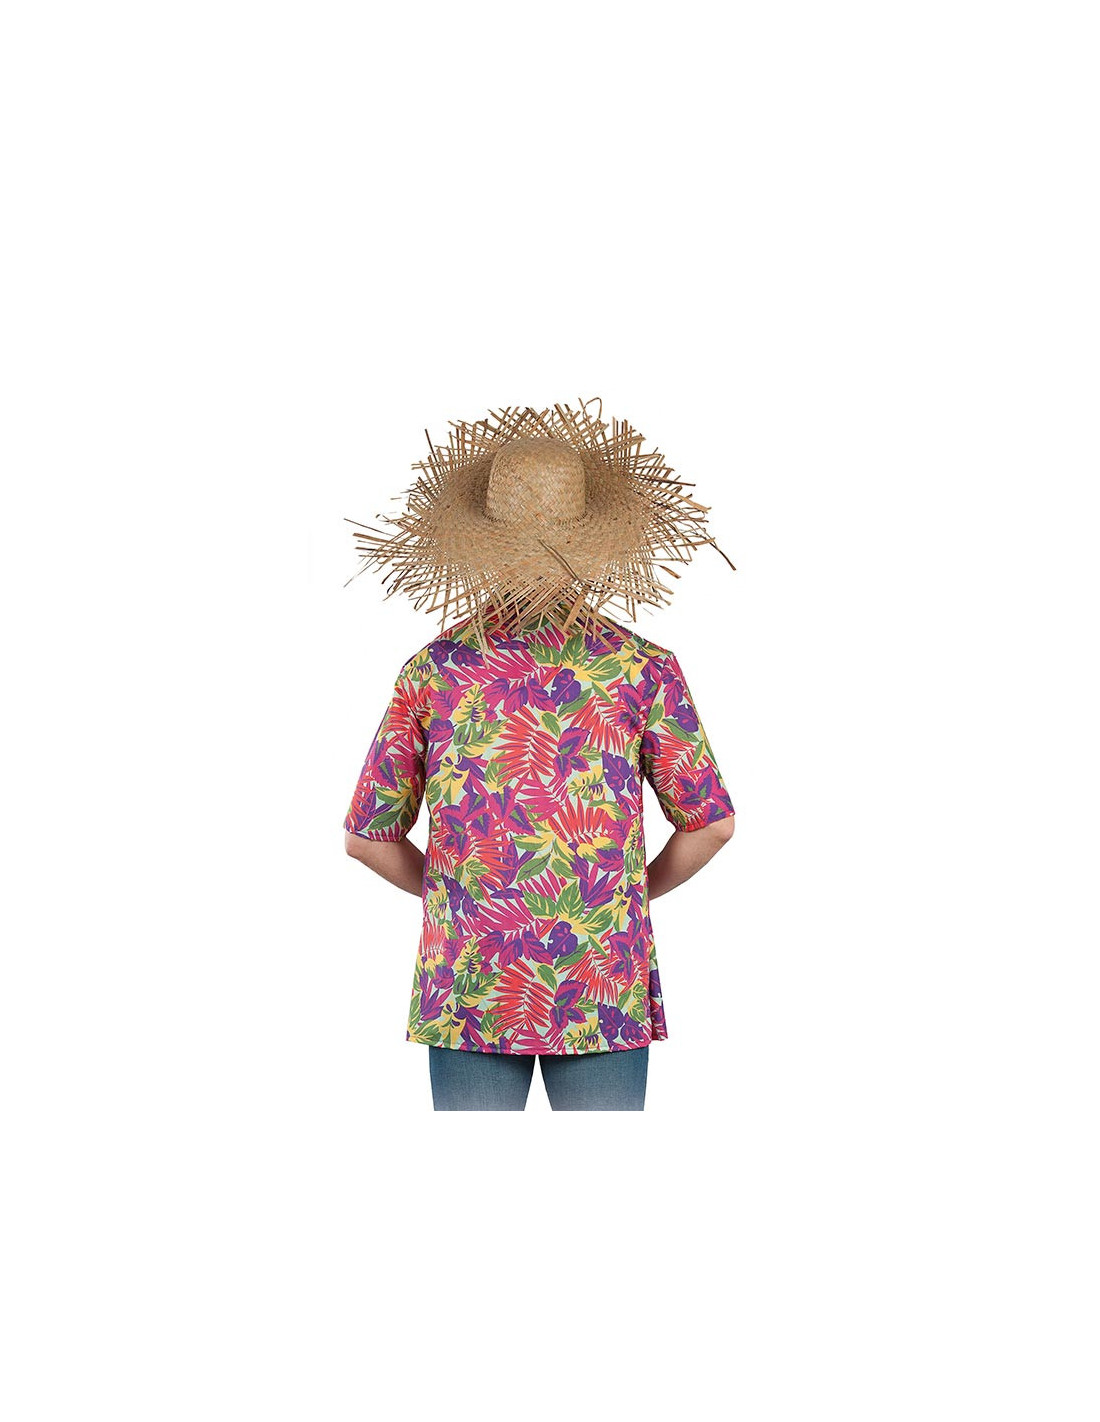 Camisa hawaiana adulto - Envío 24h|Comprar en Disfraces Bacanal